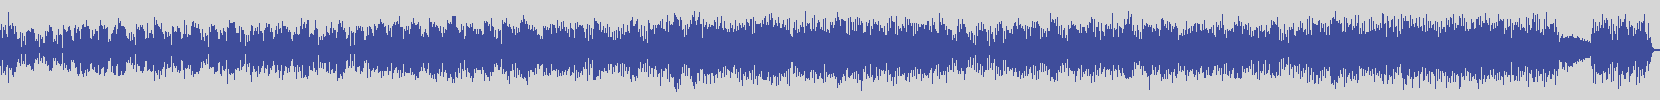 digiphonic_records [DPR013] Little Tony - Fuoco Di Paglia [Original Mix] audio wave form